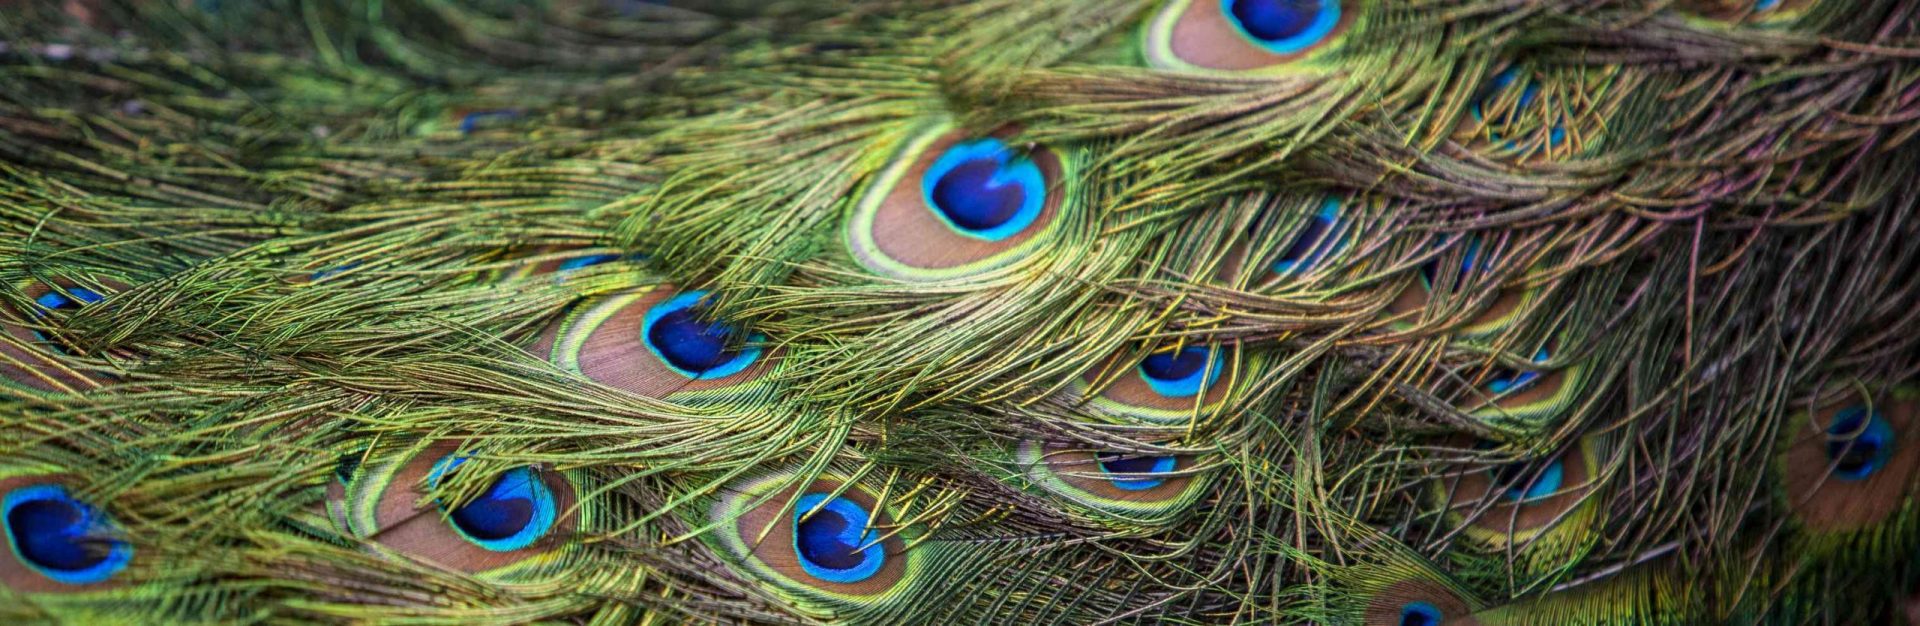 Patrón de plumas brillantes de varios colores de una cola de pavo real, fondo